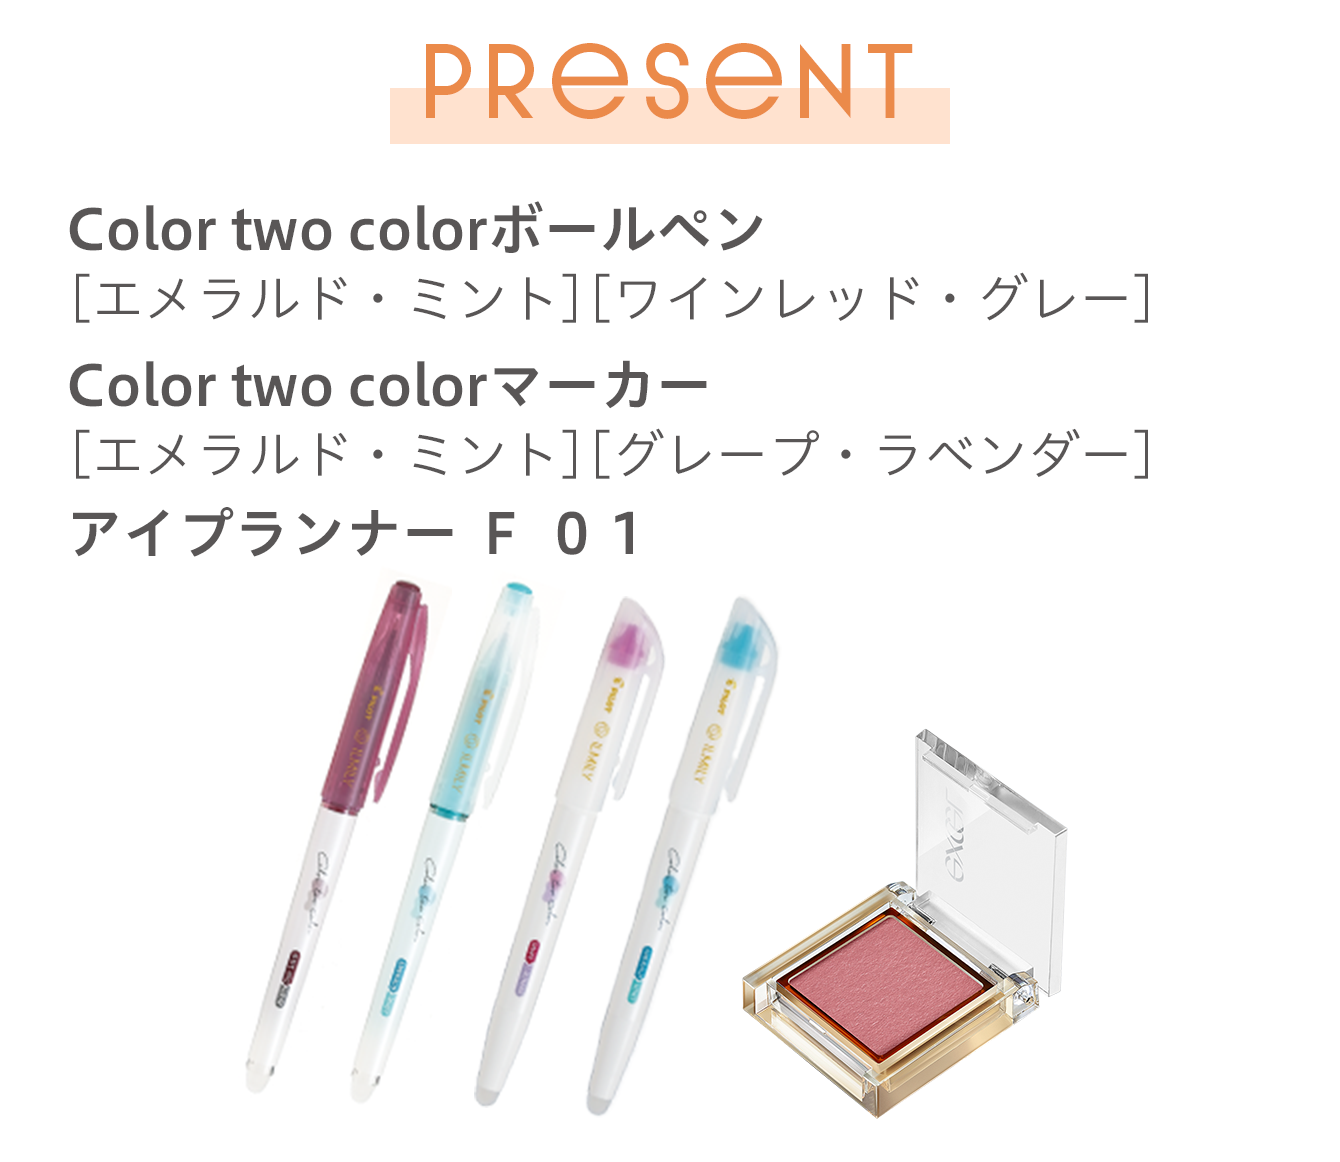 《PRESENT》Color two colorボールペン[エメラルド・ミント][ワインレッド・グレー]／Color two colorマーカー[エメラルド・ミント][グレープ・ラベンダー]／アイプランナー Ｆ ０１